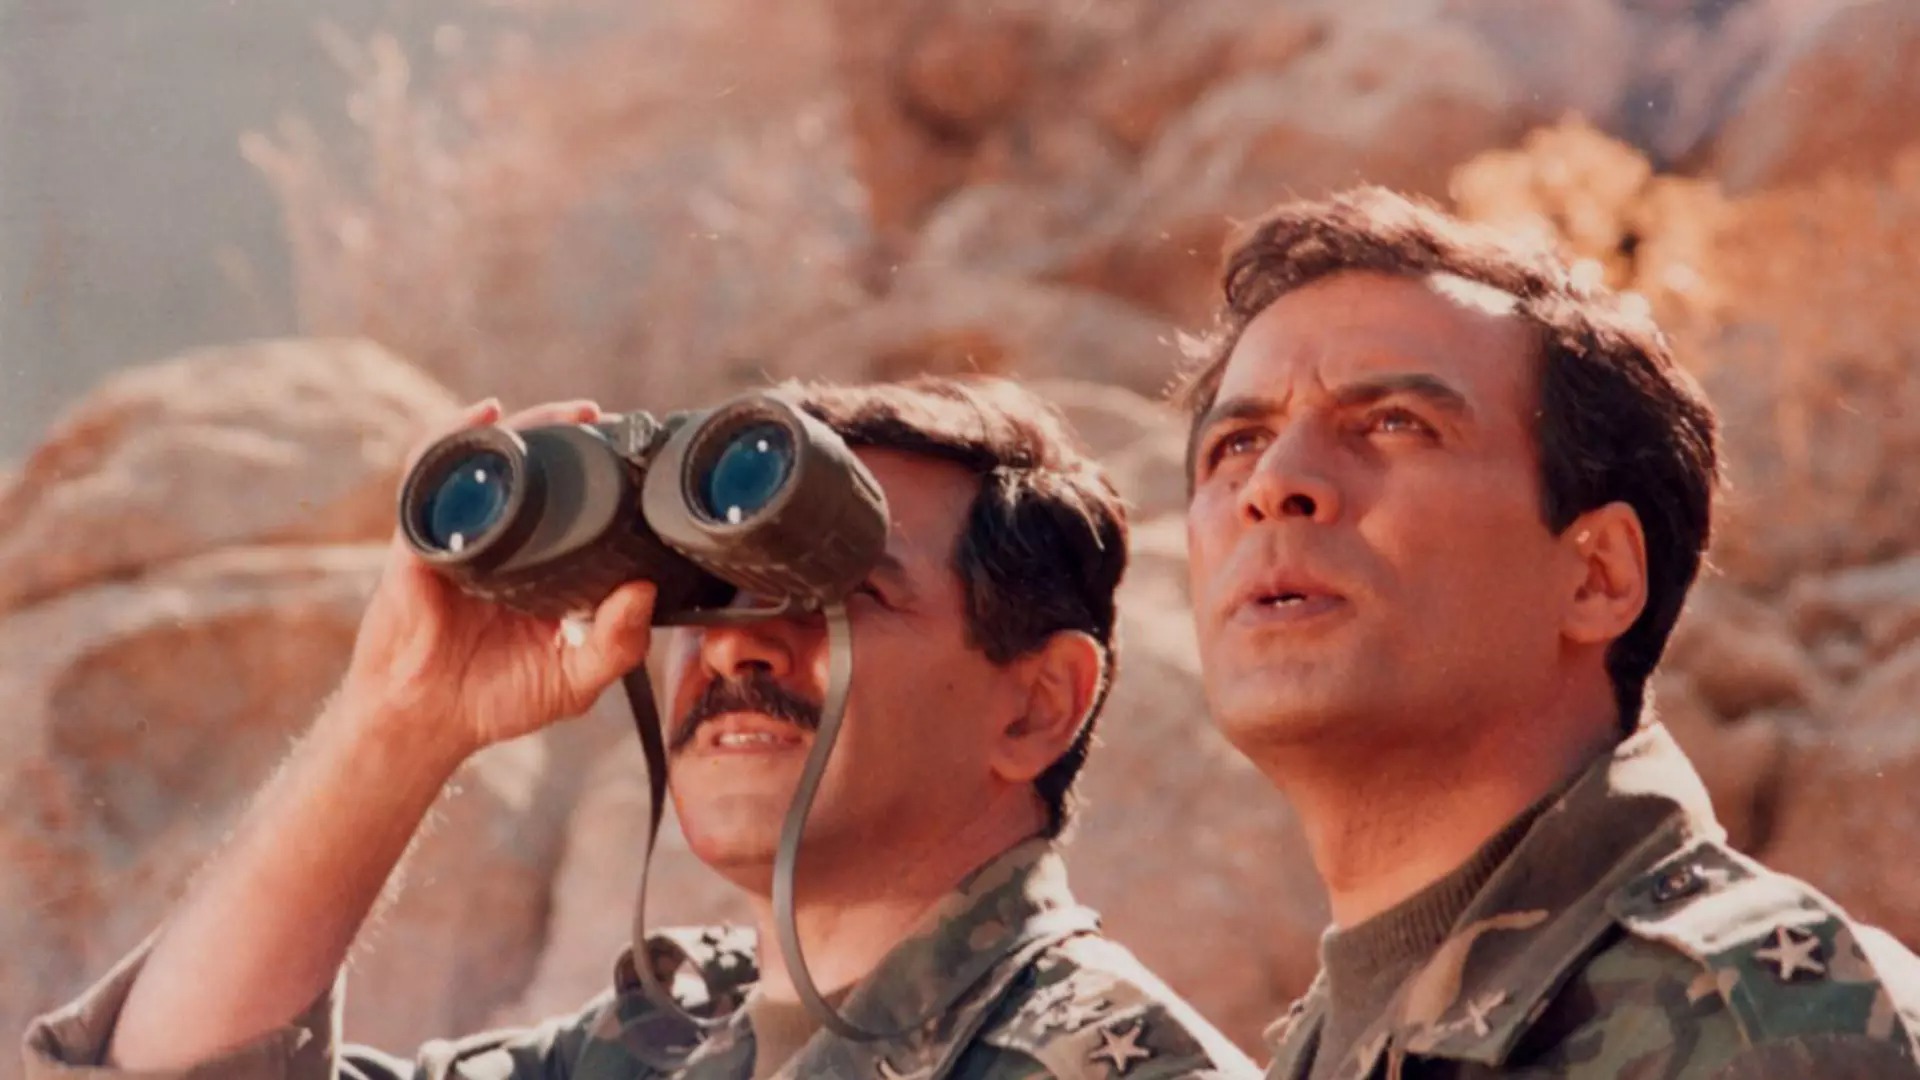 تاریخ جنگ ایران و عراق در قاب سینما

